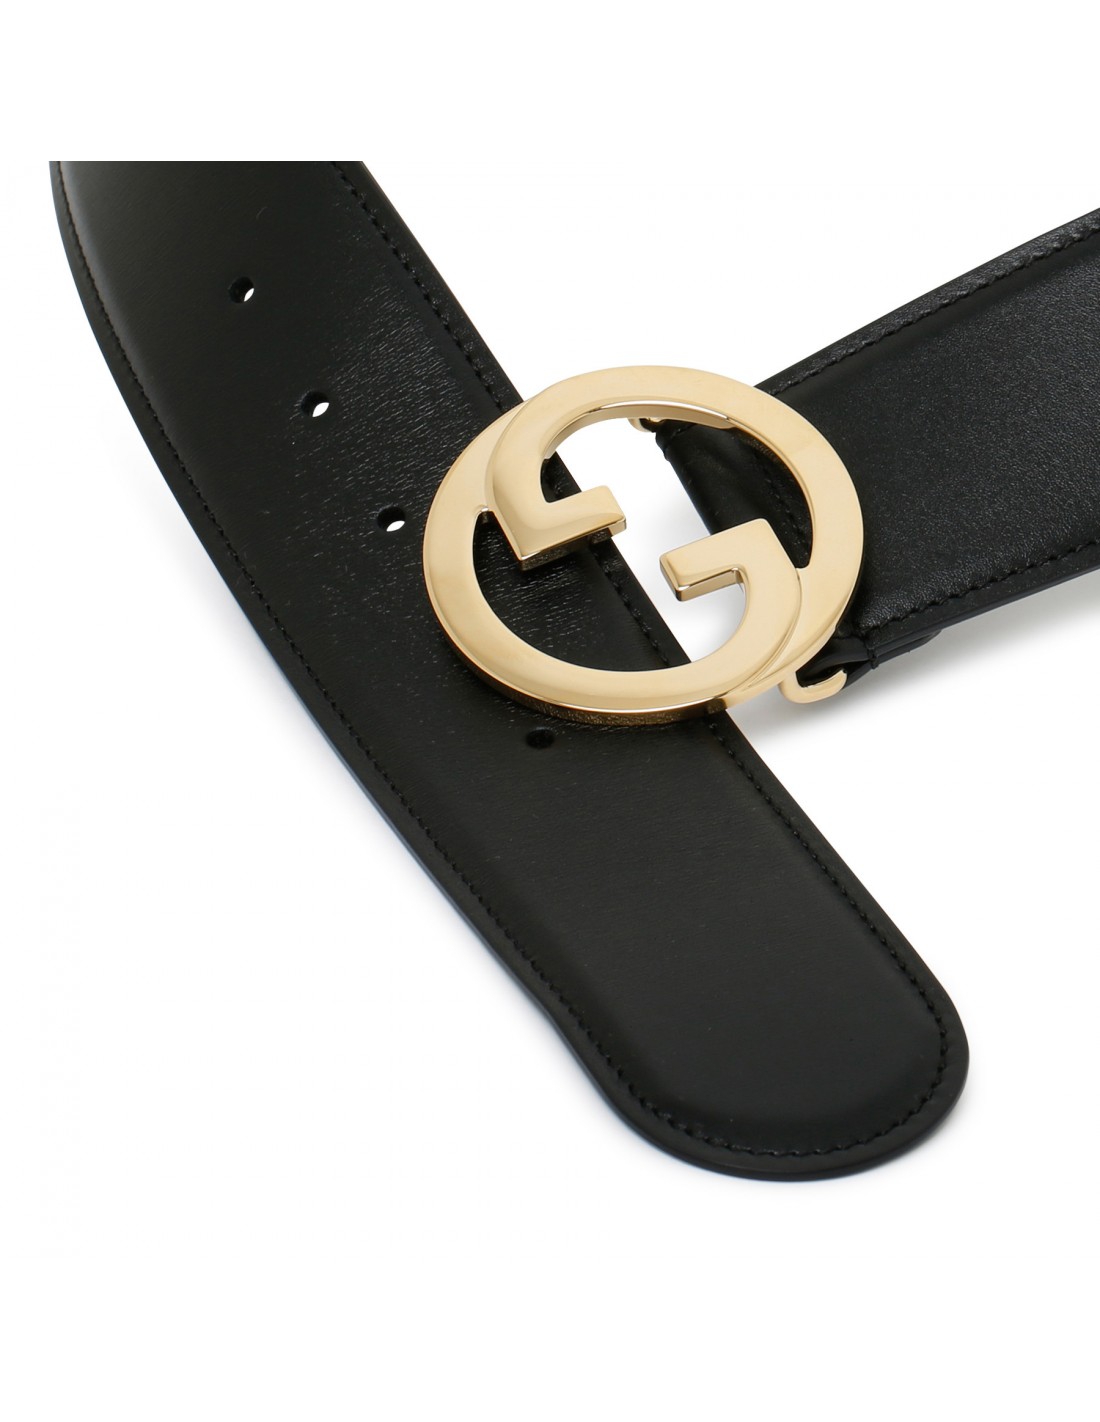 Black belt with round Interlocking G